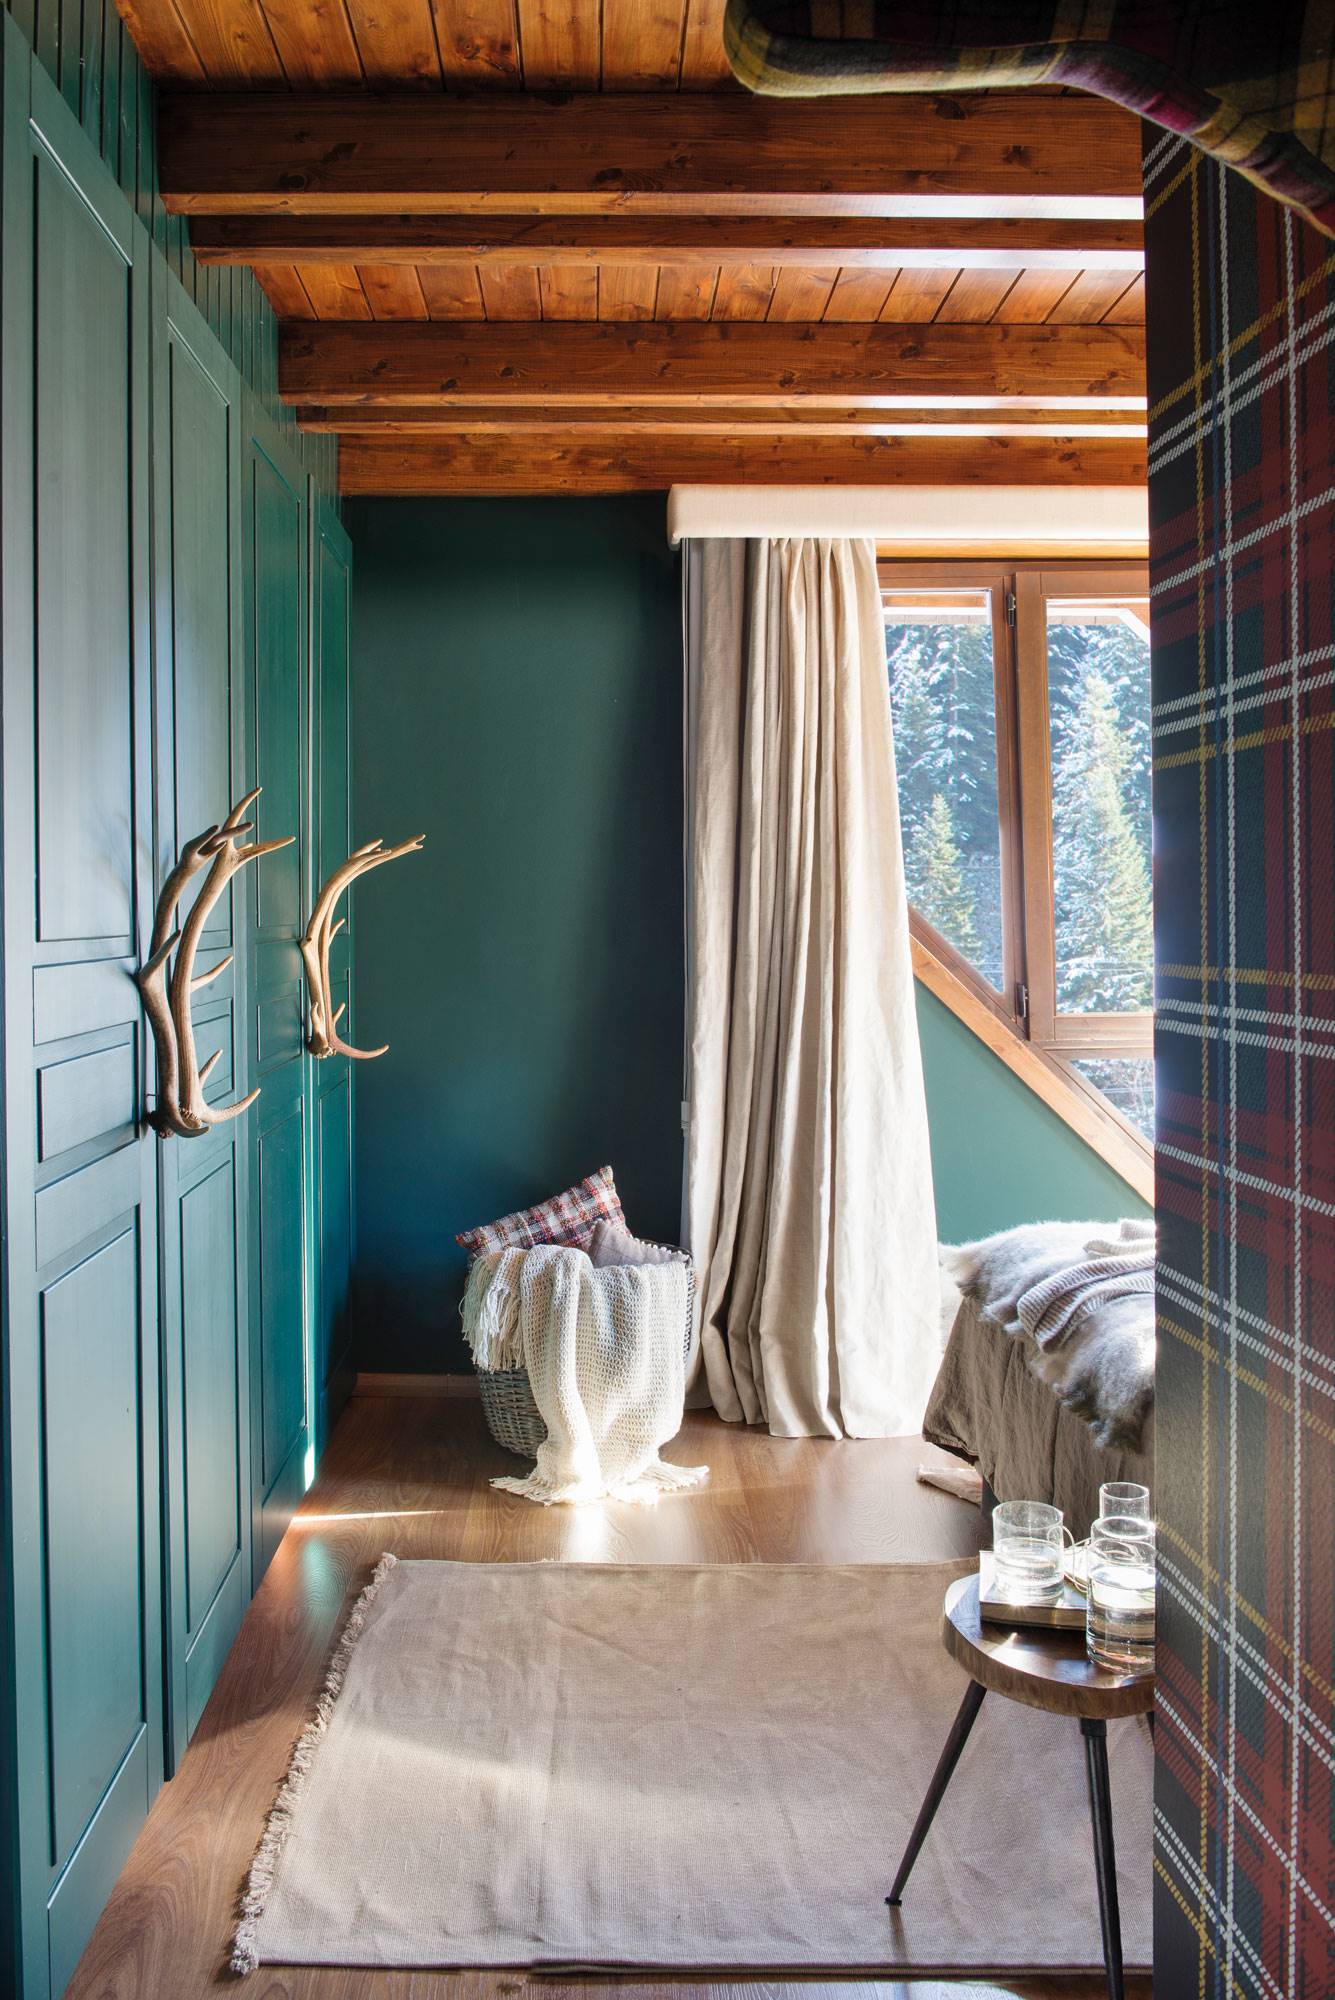 Dormitorio principal con armario pintado de color verde con unas astas como tirador.